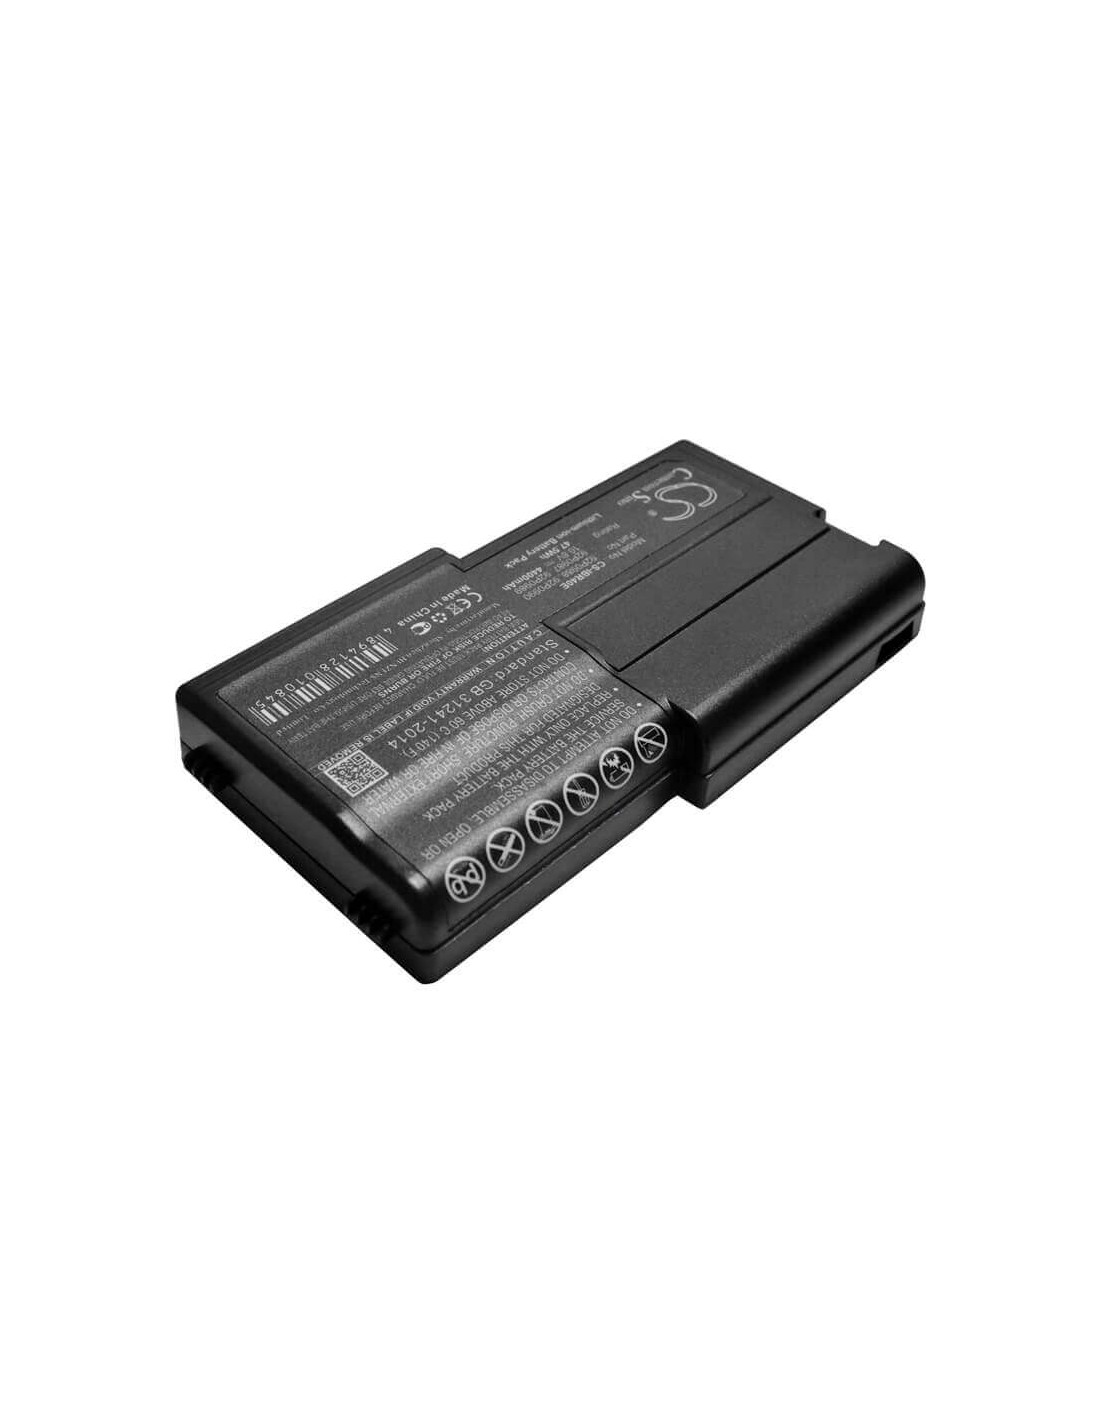 Black Battery for Ibm Thinkpad R40e, Thinkpad R40e-2684, Thinkpad R40e-2685 10.8V, 4400mAh - 47.52Wh